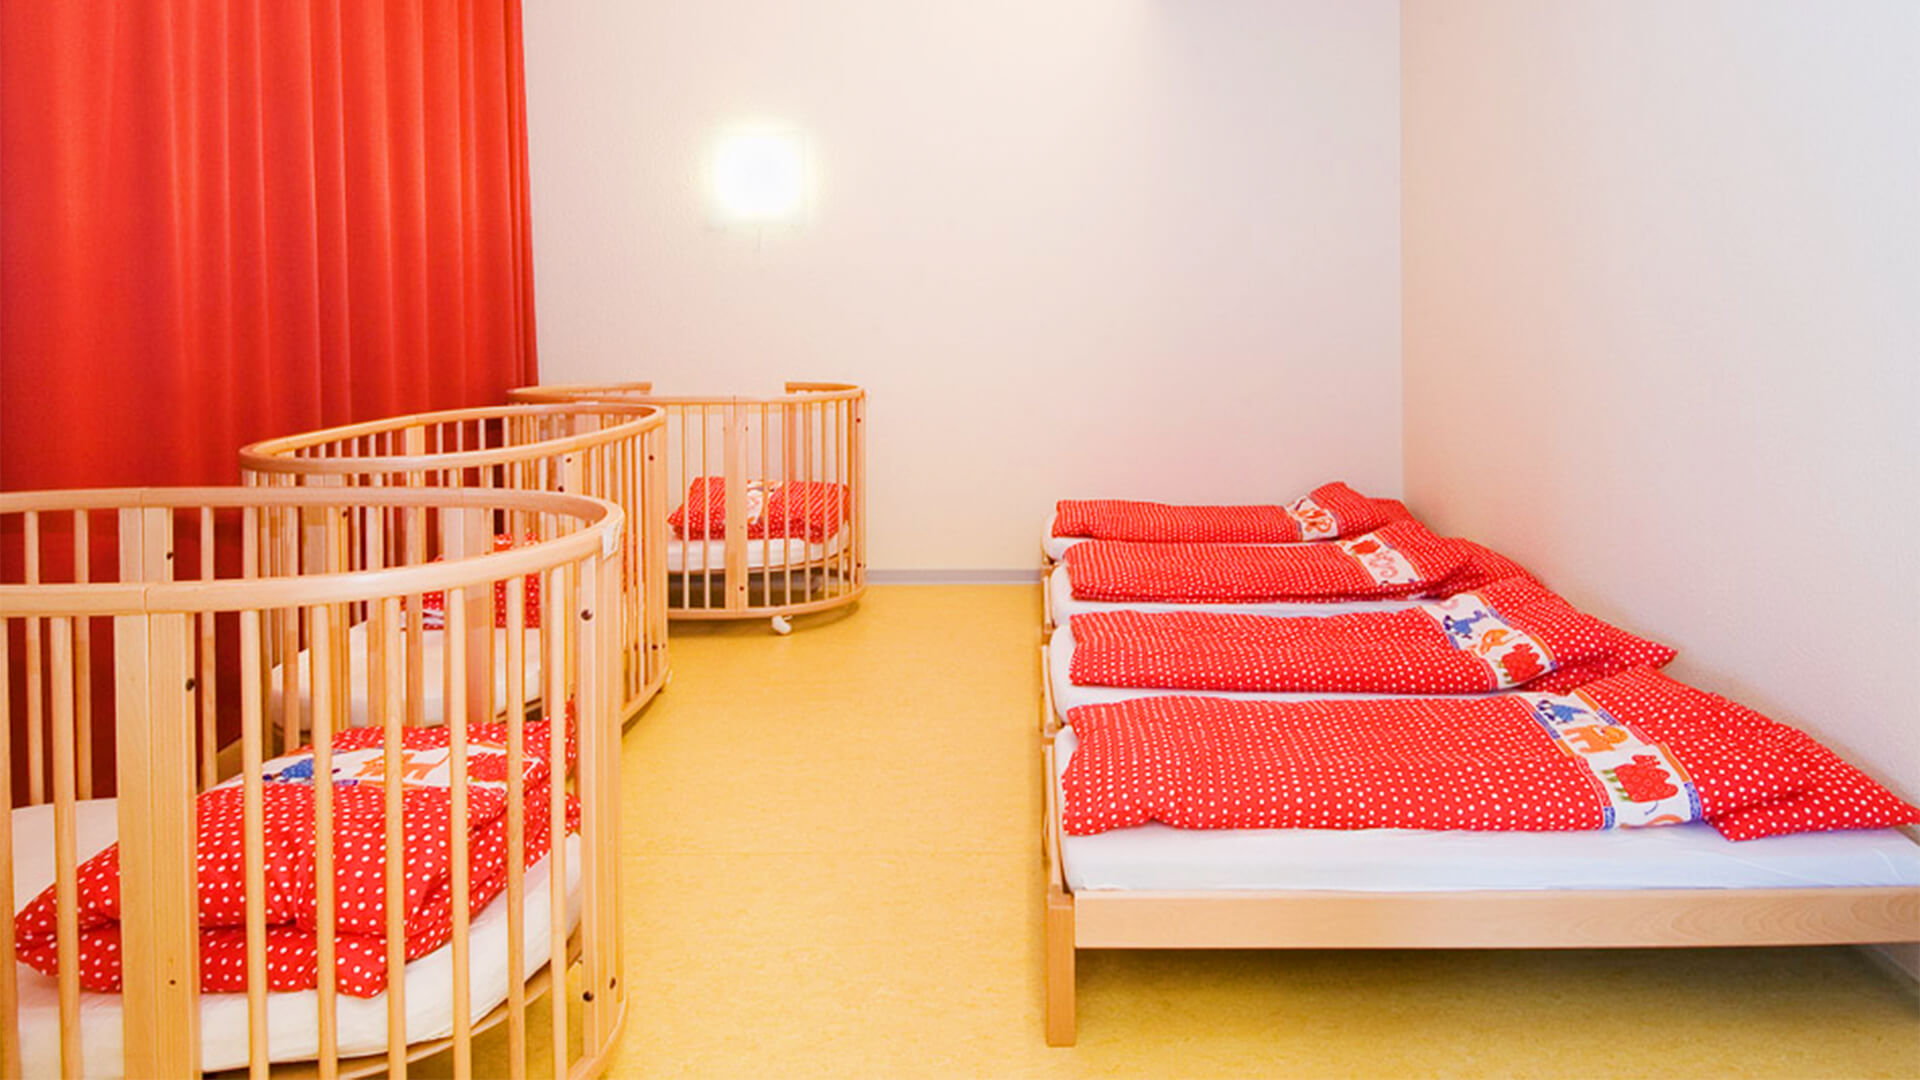 Schlaf- und Ruheraum mit Betten für große und kleine Kinder